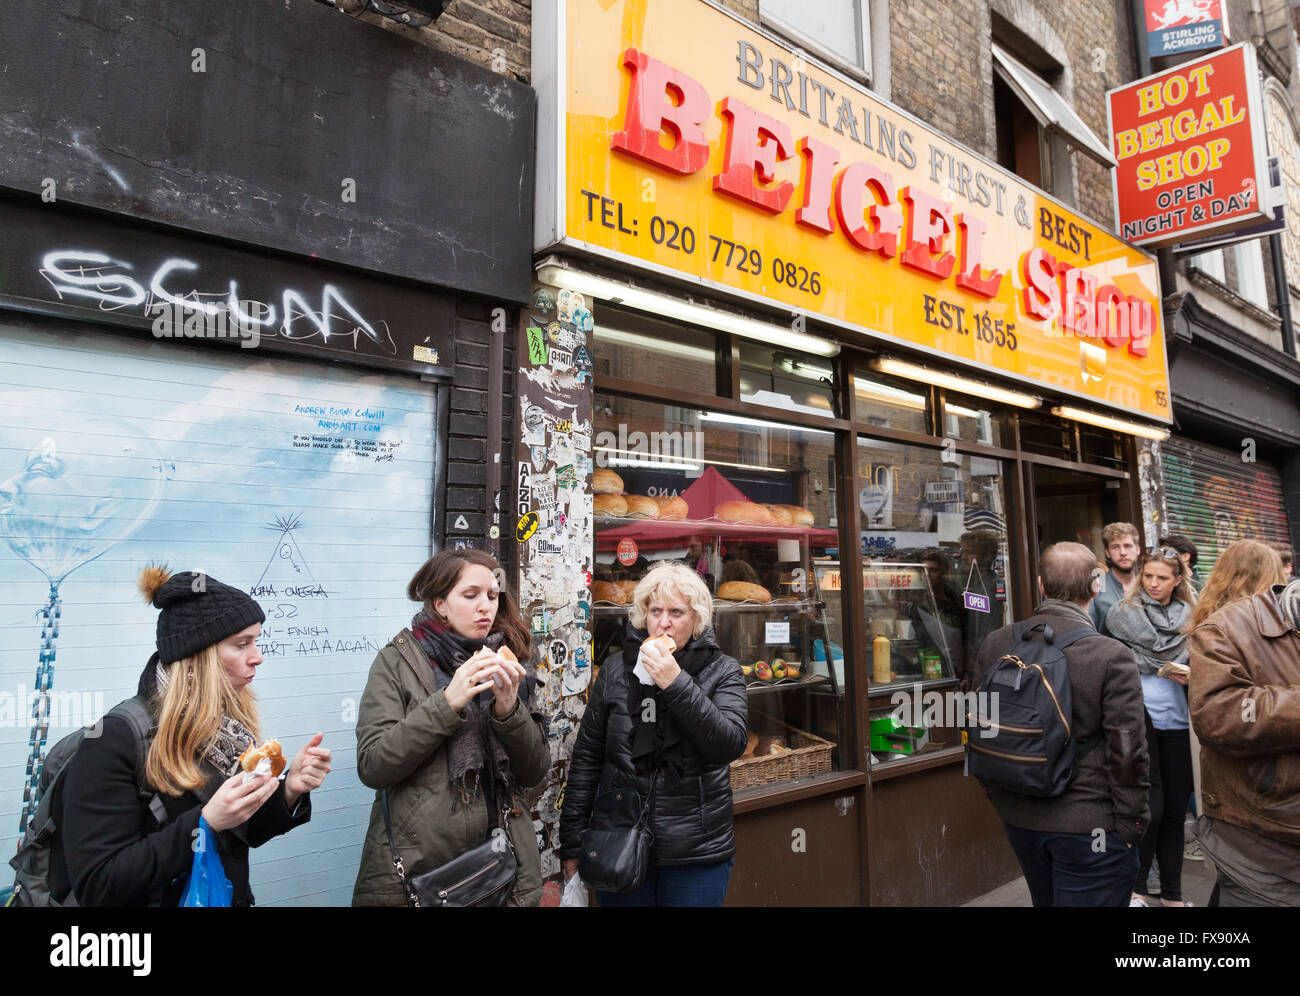 Persone mangiare beigels al di fuori del negozio di Beigel, Brick Lane, Spitalfields, London East End, Regno Unito Foto Stock